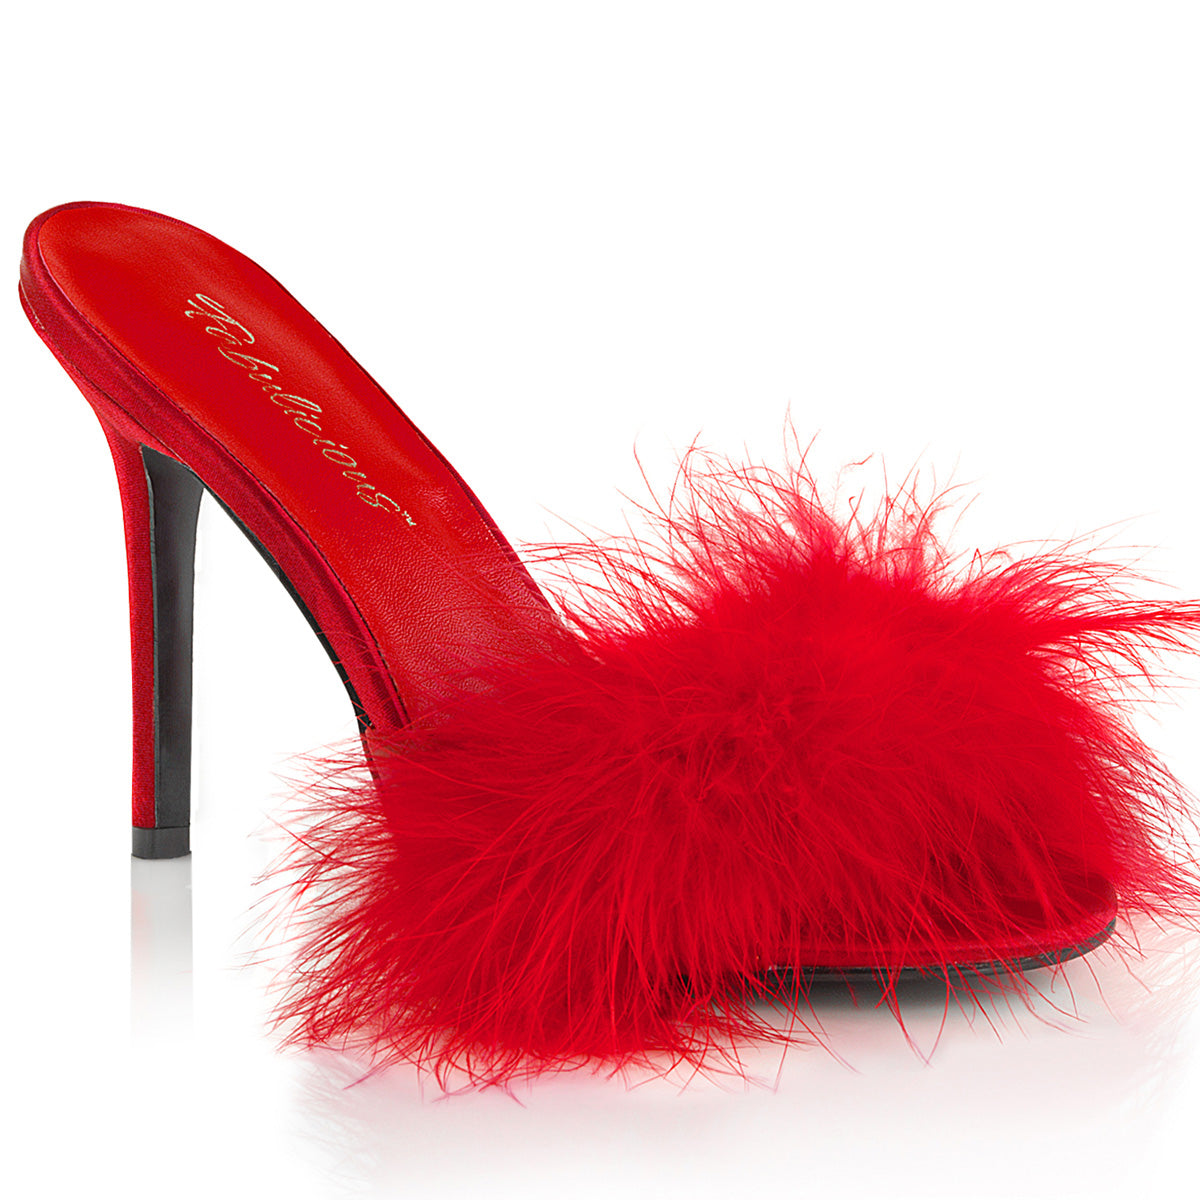 Classique-01f Fabulicious 4-дюймовый каблук красная спальня сексуальная обувь